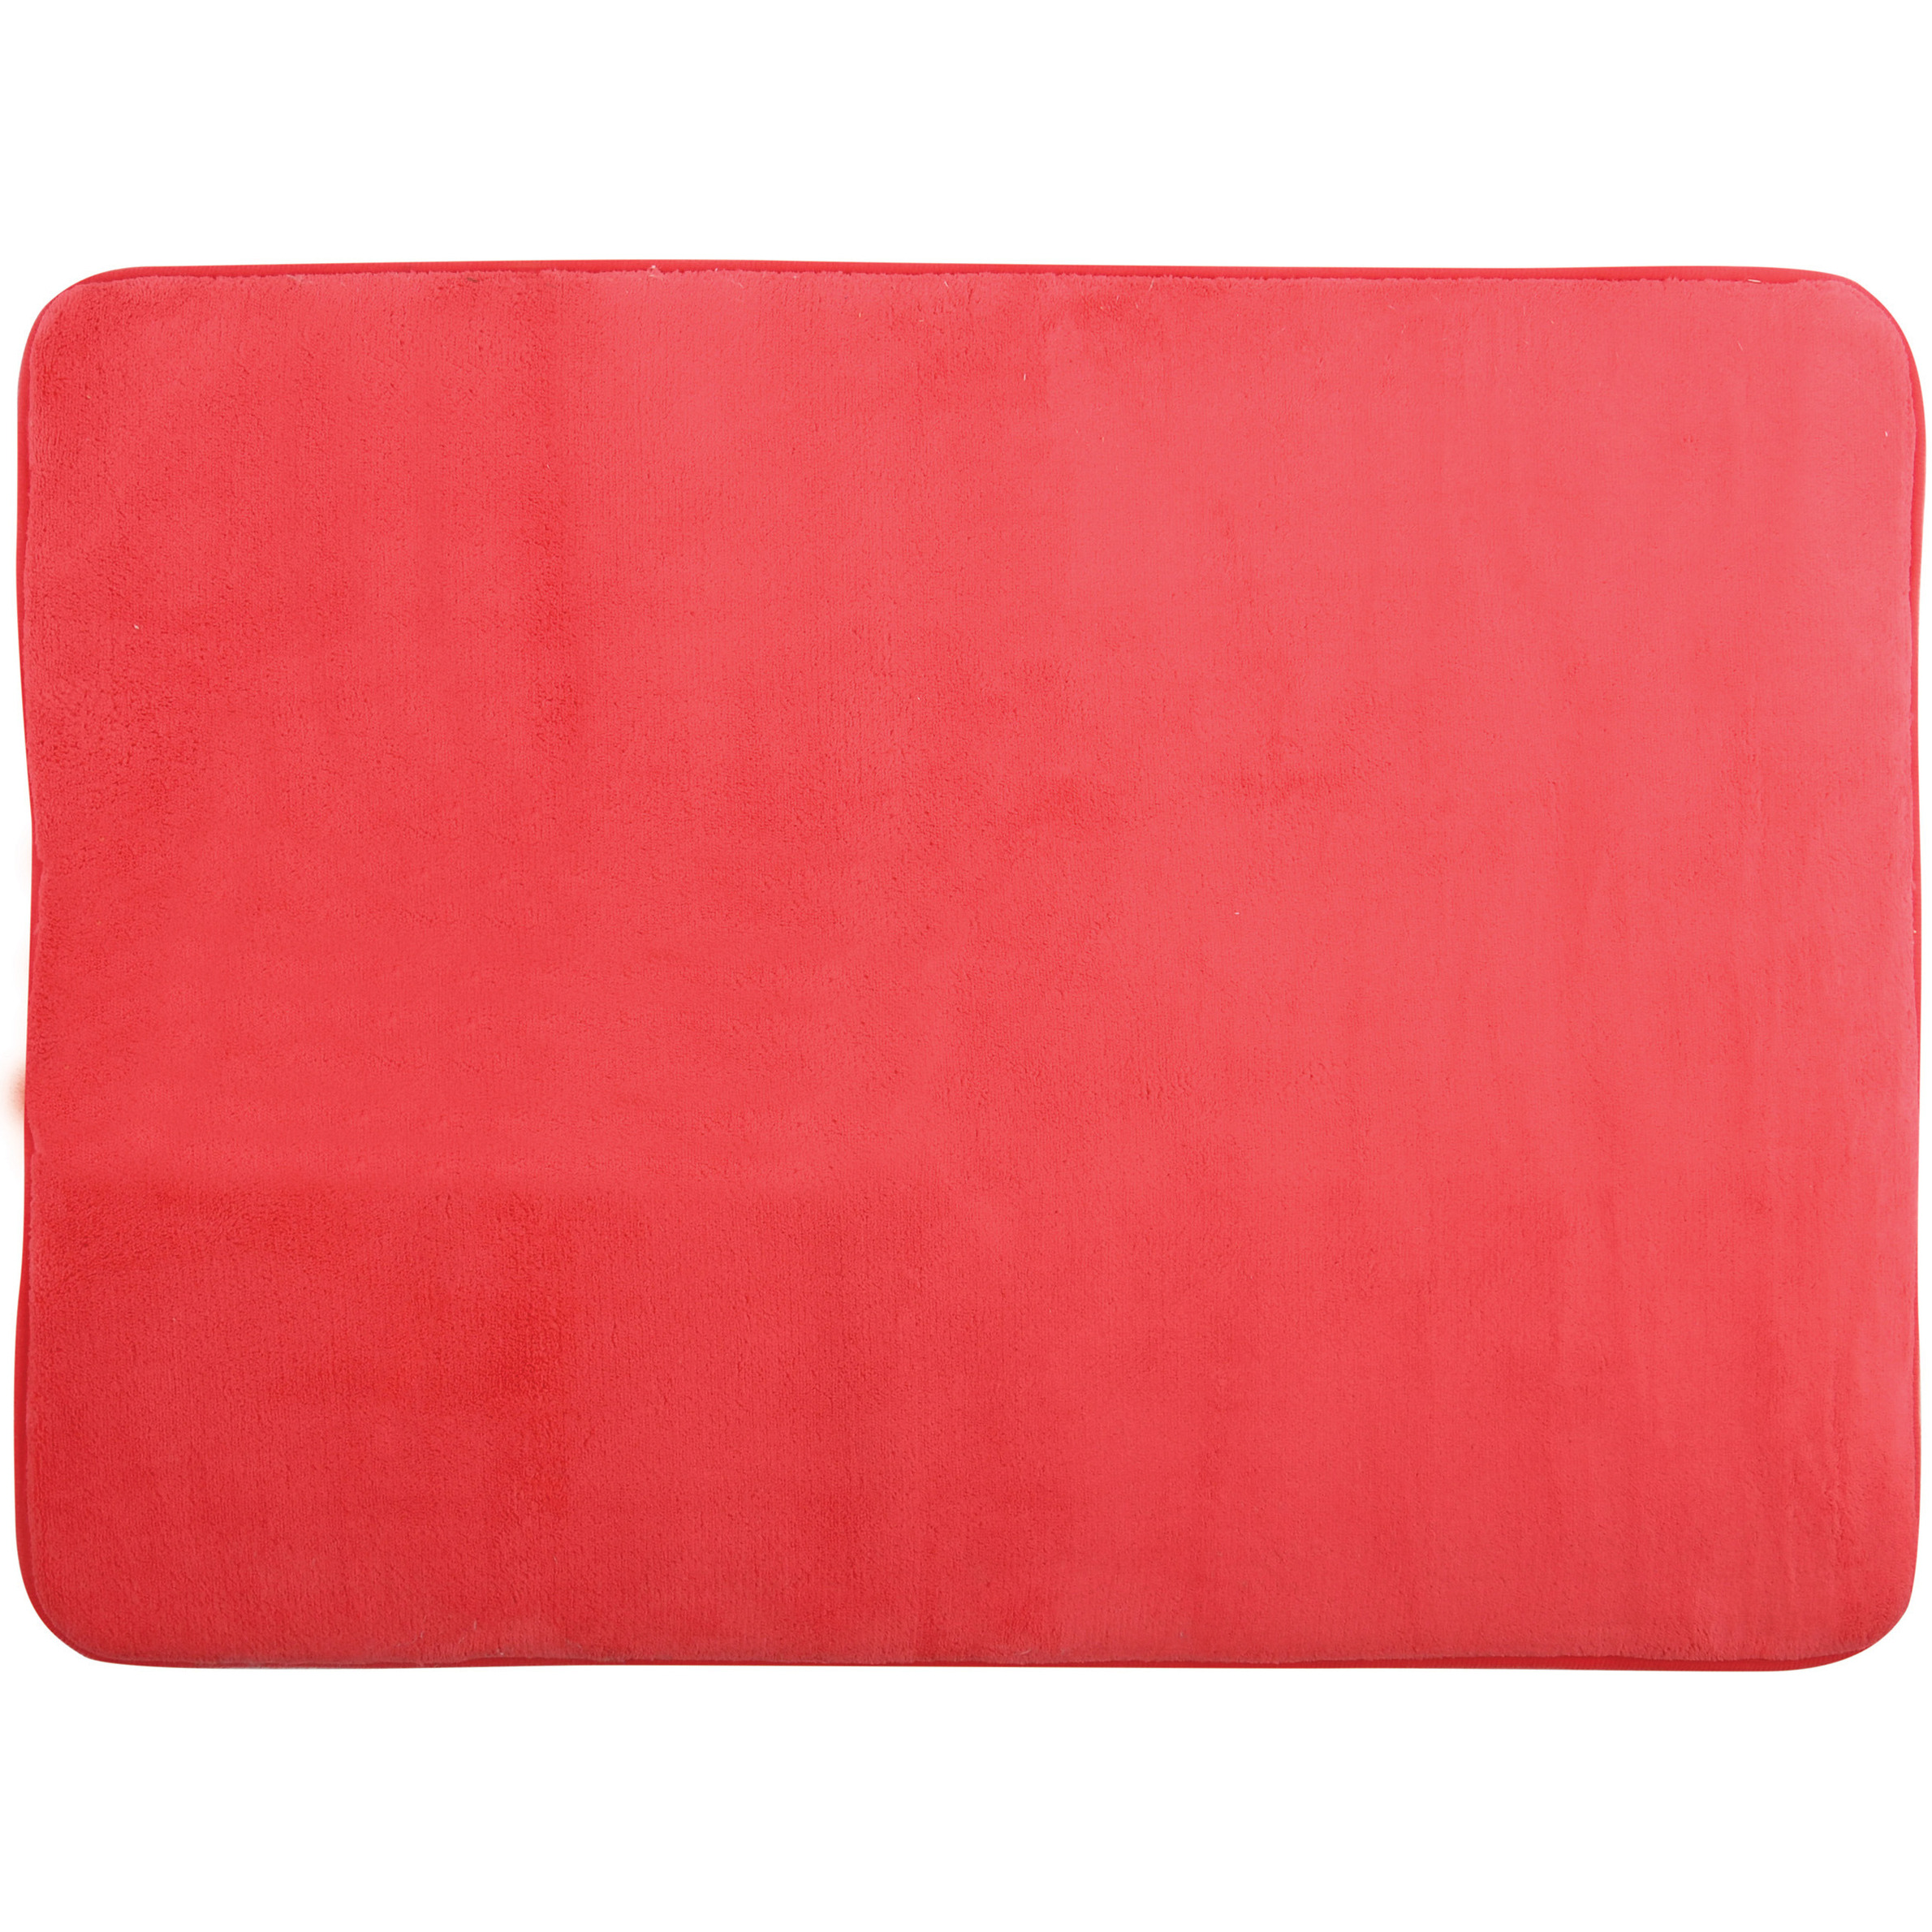 Badkamerkleedje-badmat tapijt voor op de vloer rood 50 x 70 cm